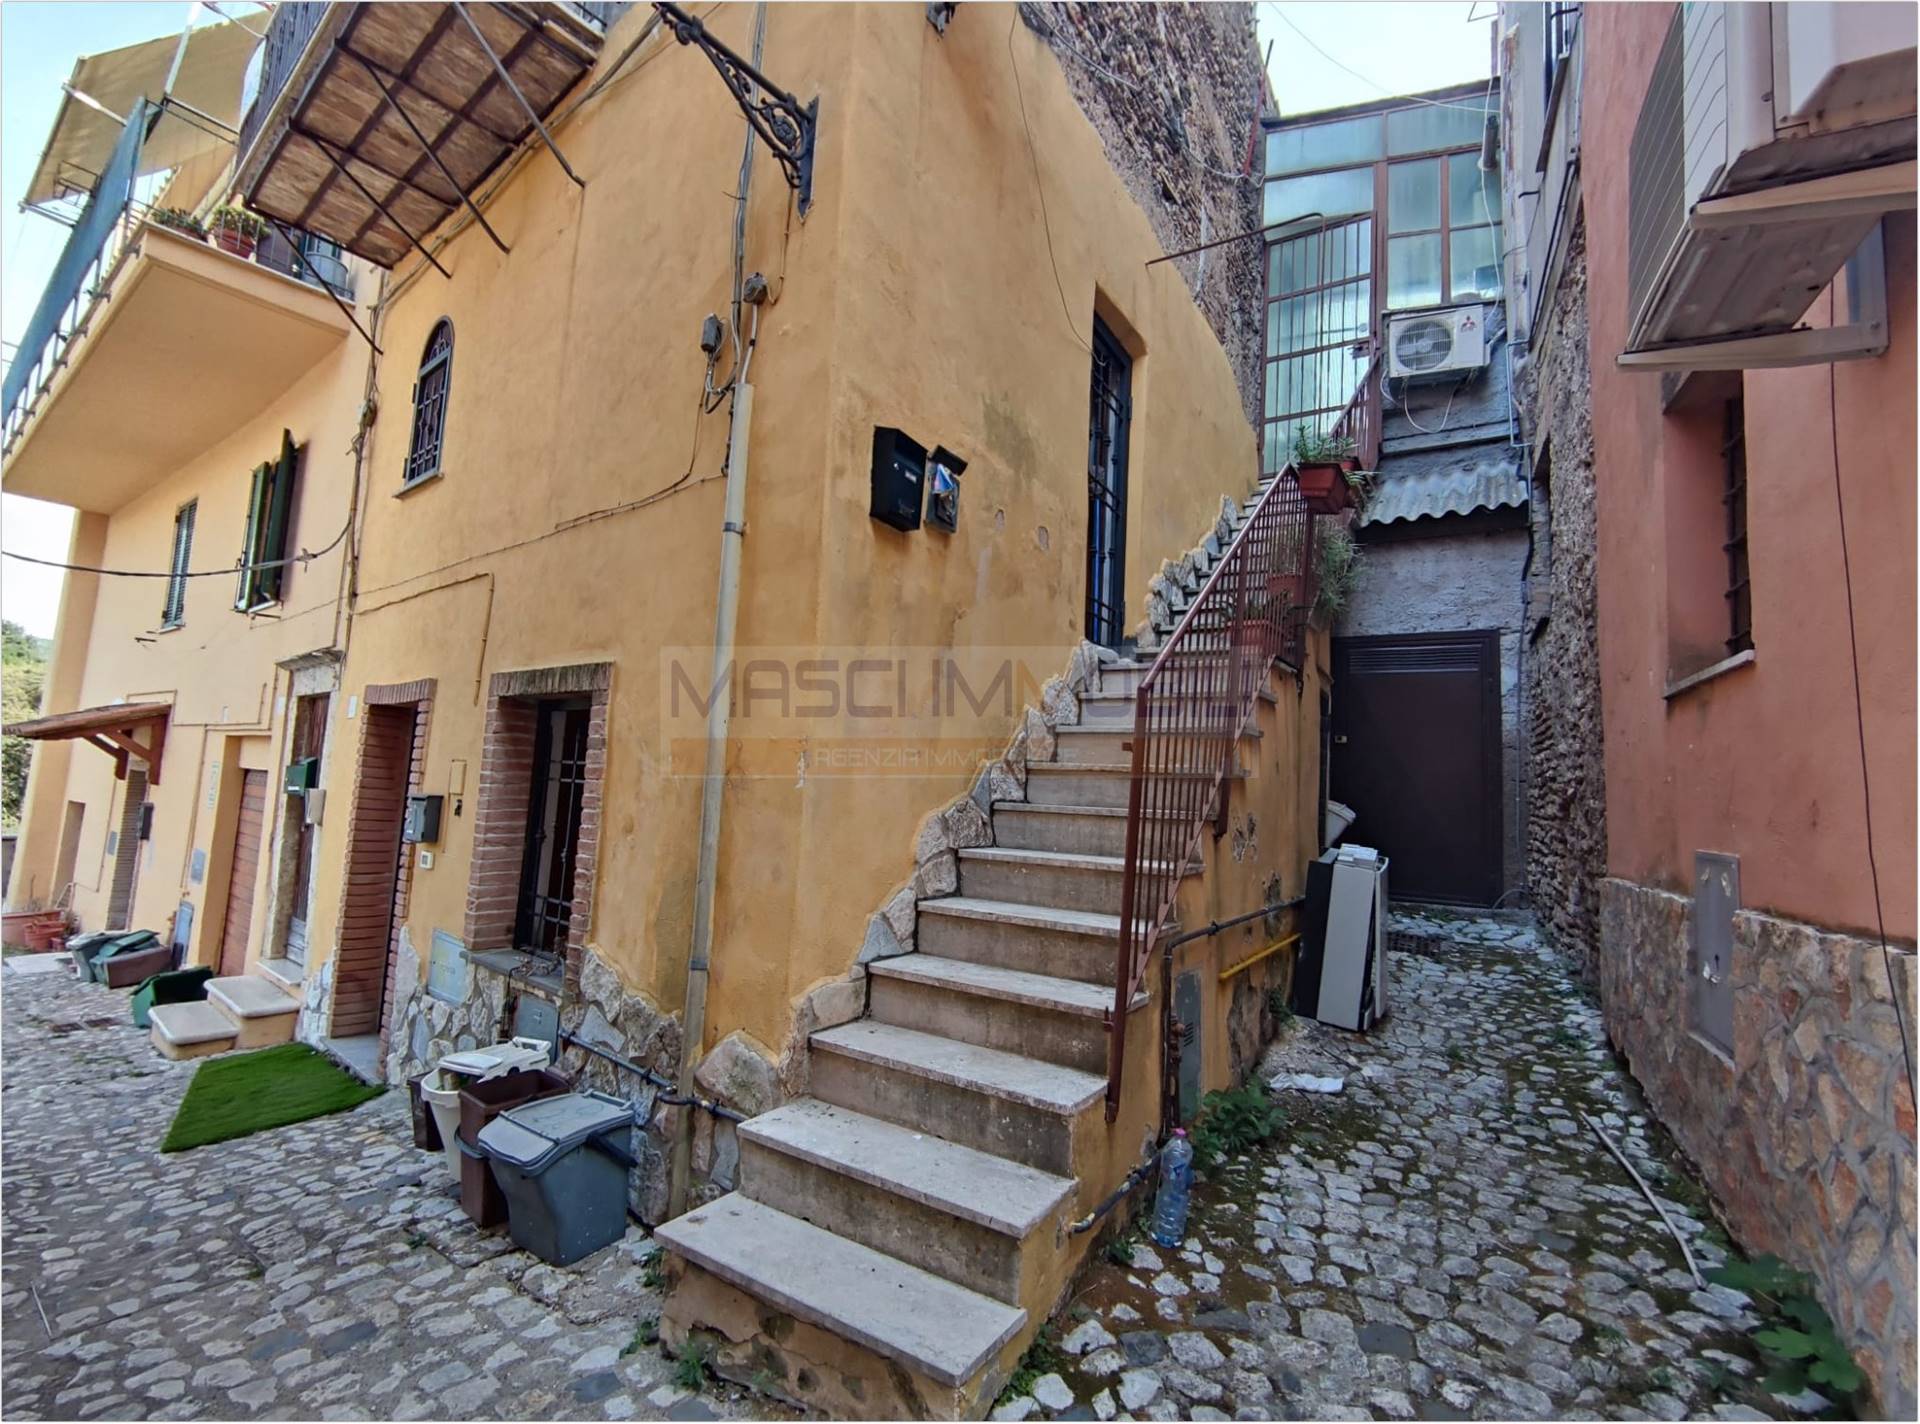 Appartamento in vendita a Fiano Romano, 2 locali, prezzo € 35.000 | PortaleAgenzieImmobiliari.it